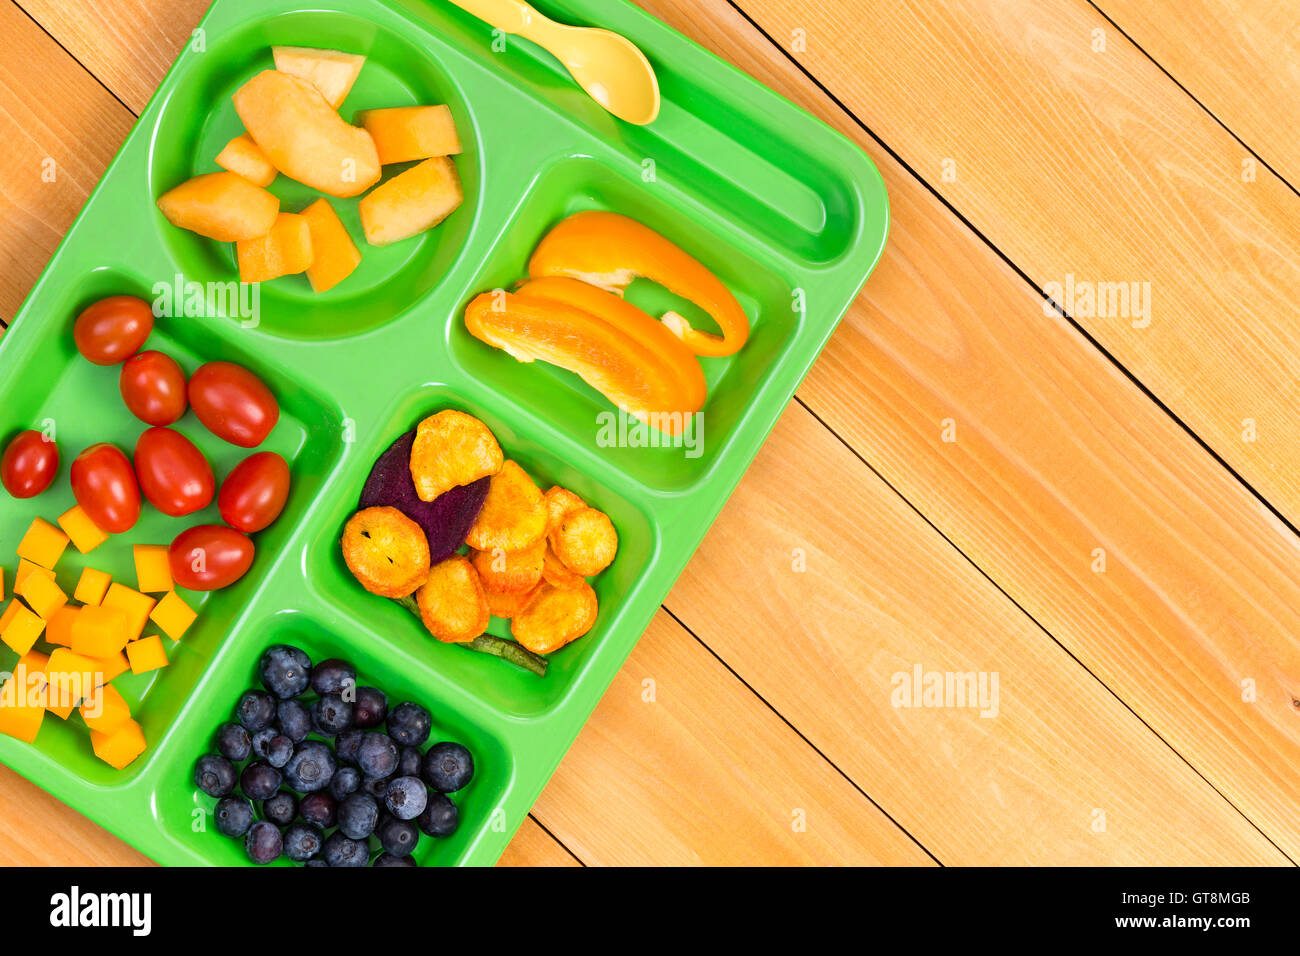 Taille Enfant déjeuner plateau avec tomates cerises, melon, les bleuets et le piment doux fruits sur table en bois Banque D'Images